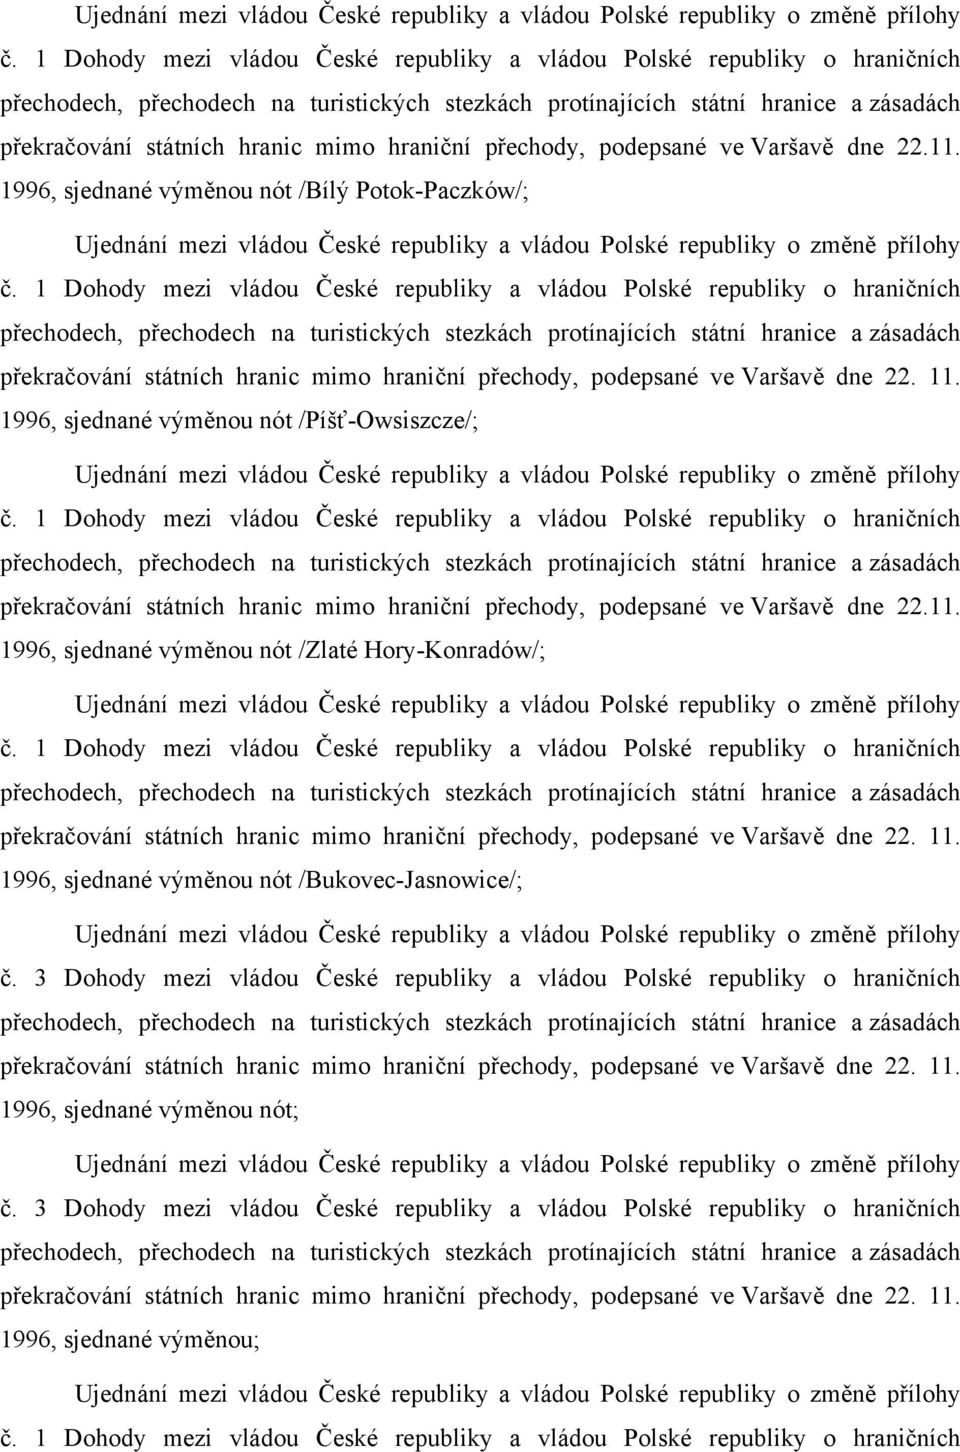 1 Dohody mezi vládou České republiky a vládou Polské republiky o hraničních překračování státních hranic mimo hraniční přechody, podepsané ve Varšavě dne 22. 11.